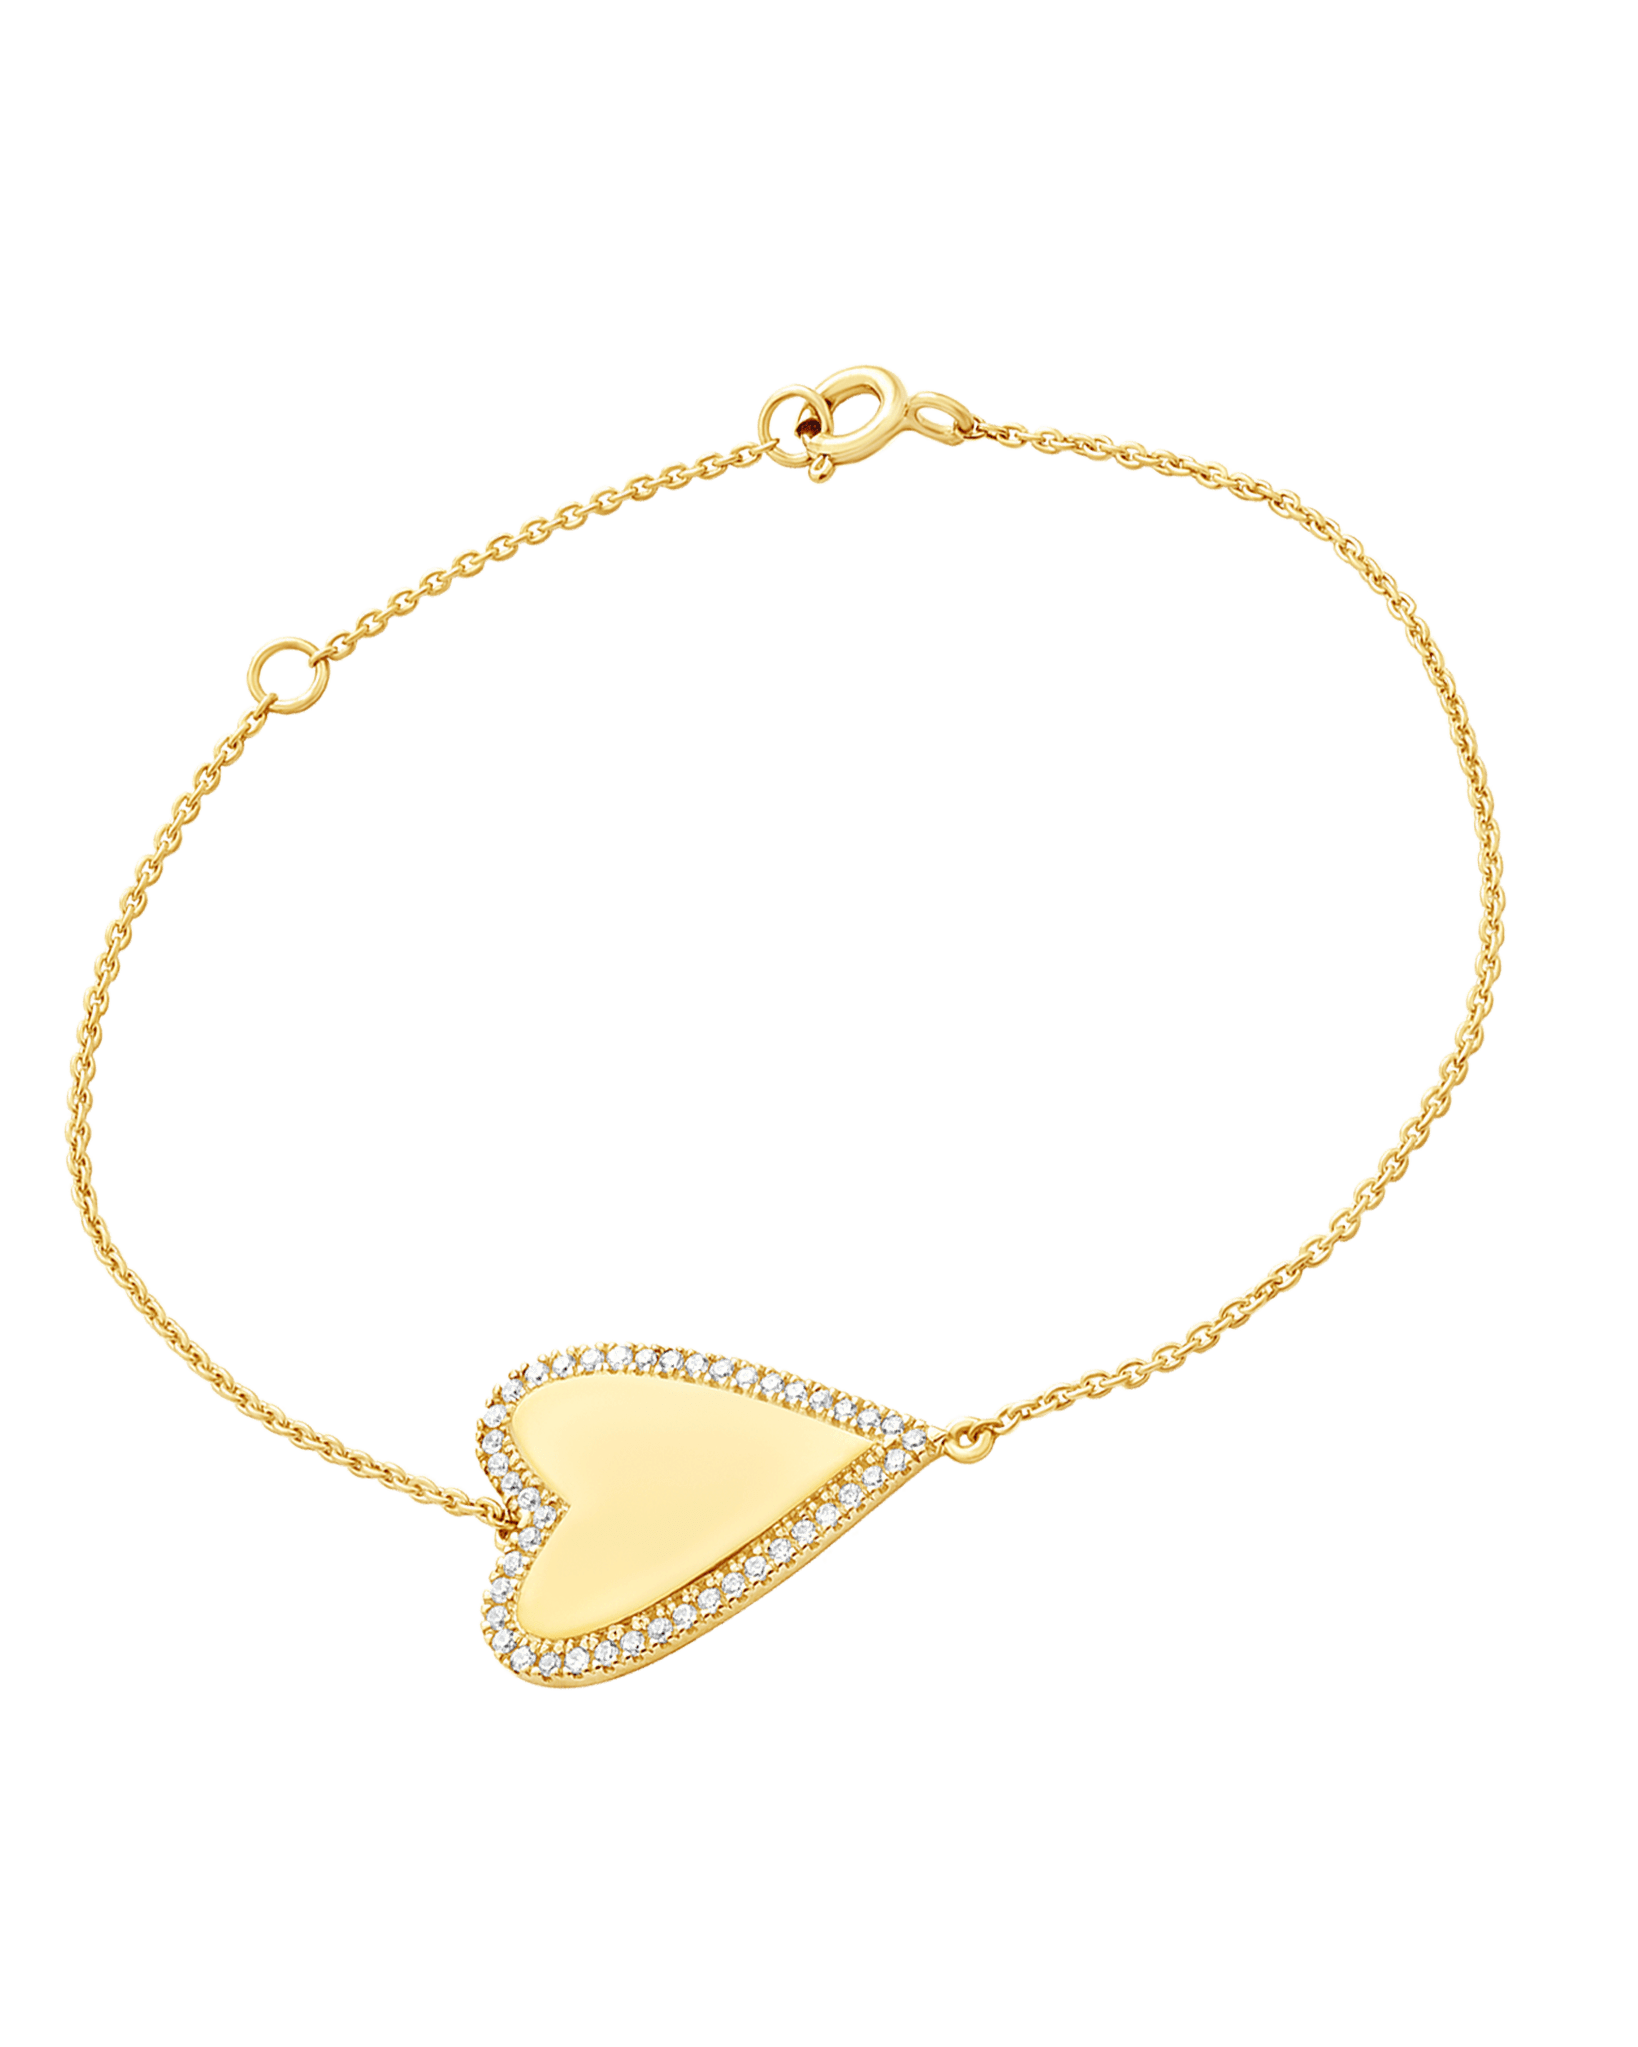 Outlined Diamond Heart Bracelet